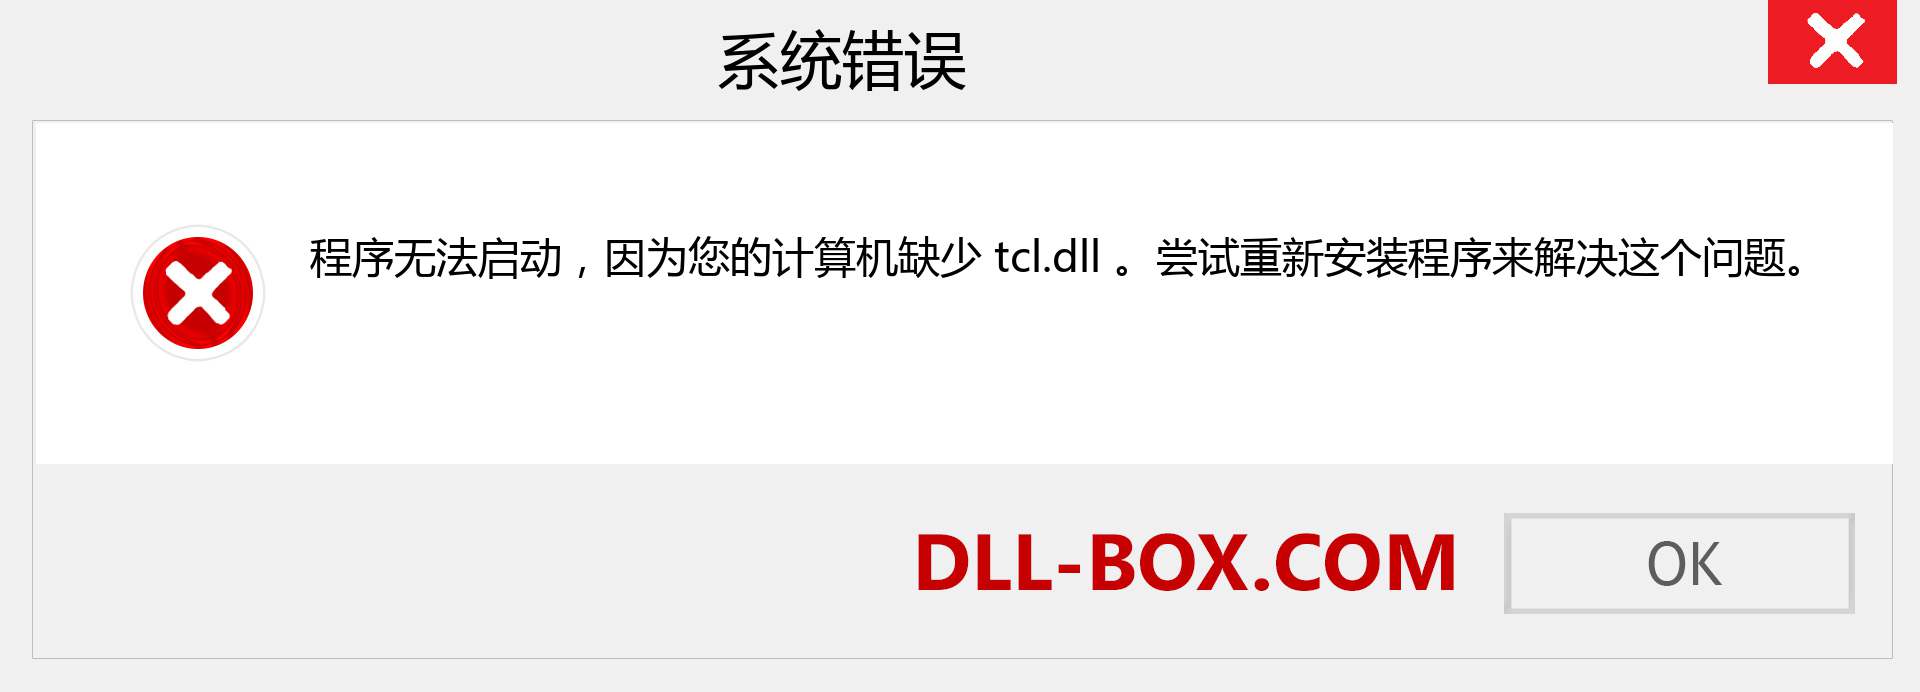 tcl.dll 文件丢失？。 适用于 Windows 7、8、10 的下载 - 修复 Windows、照片、图像上的 tcl dll 丢失错误